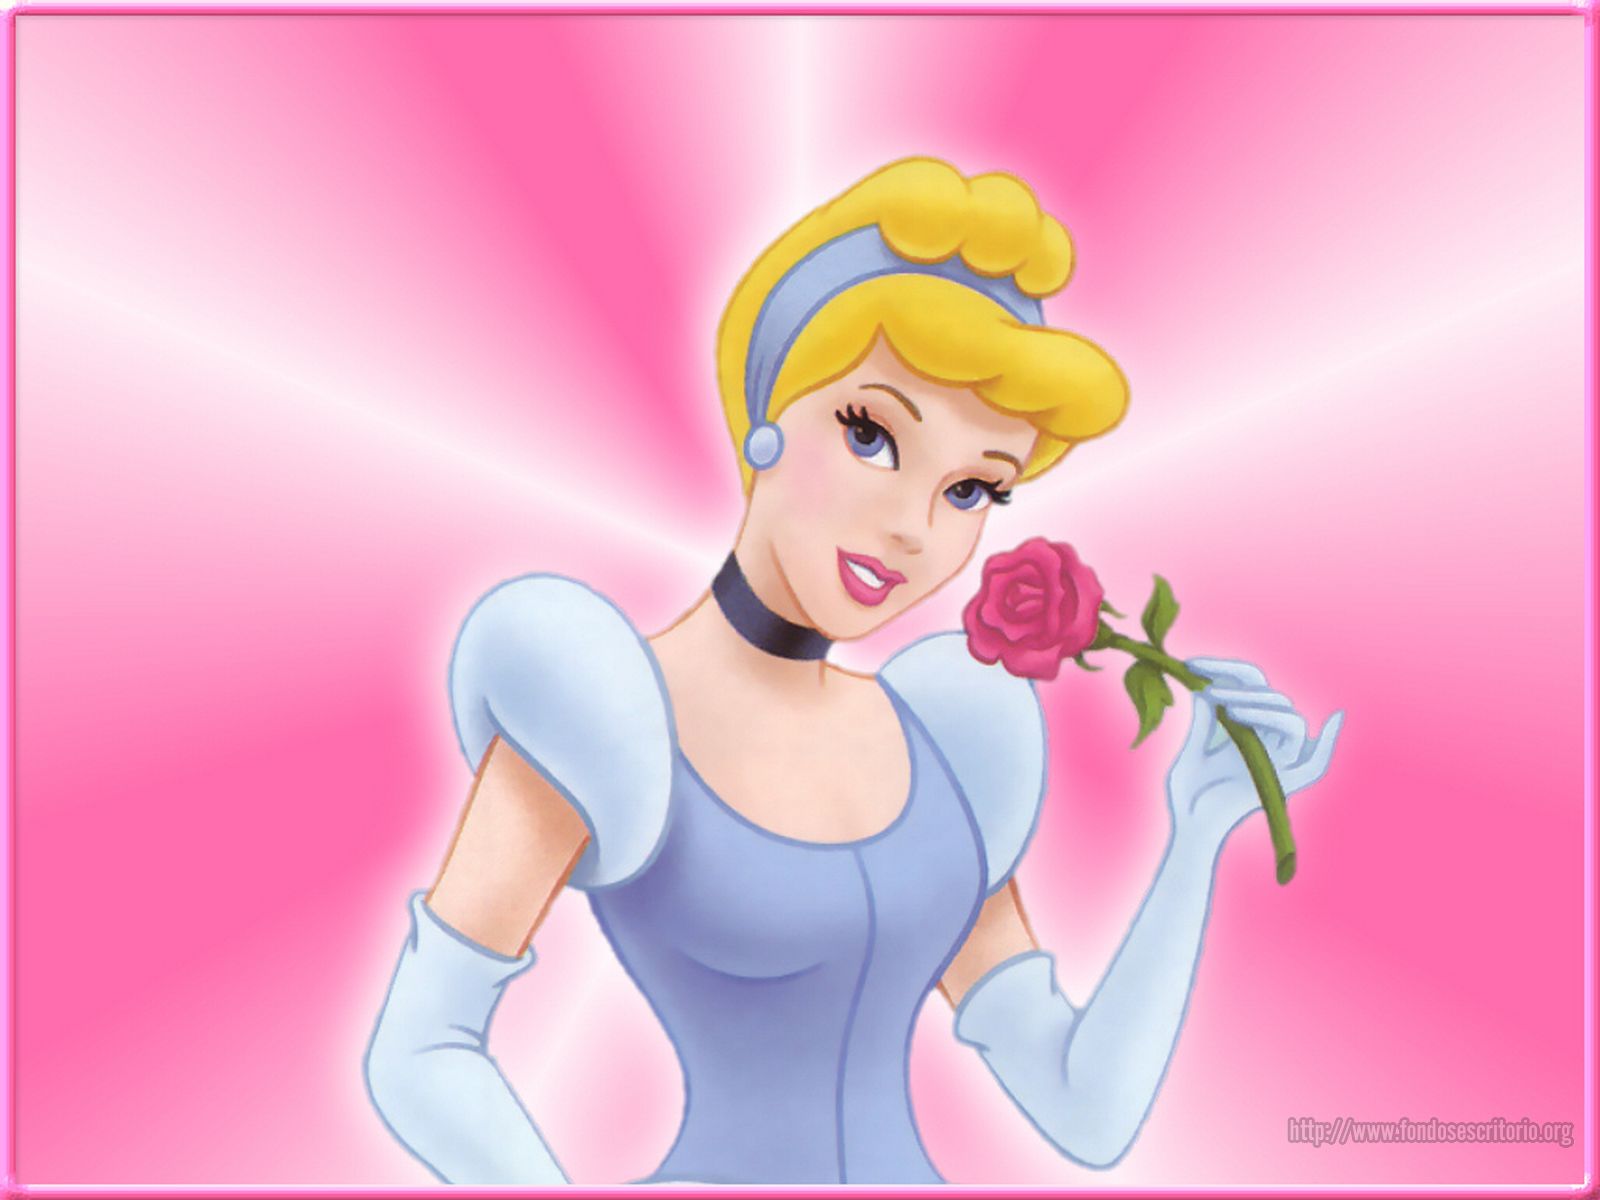 http://4.bp.blogspot.com/_UMxHrJN54AM/TIa7lF5z6dI/AAAAAAAAA1g/iXGFFX2fITY/s1600/Disney+princesas+wallapapers.jpeg